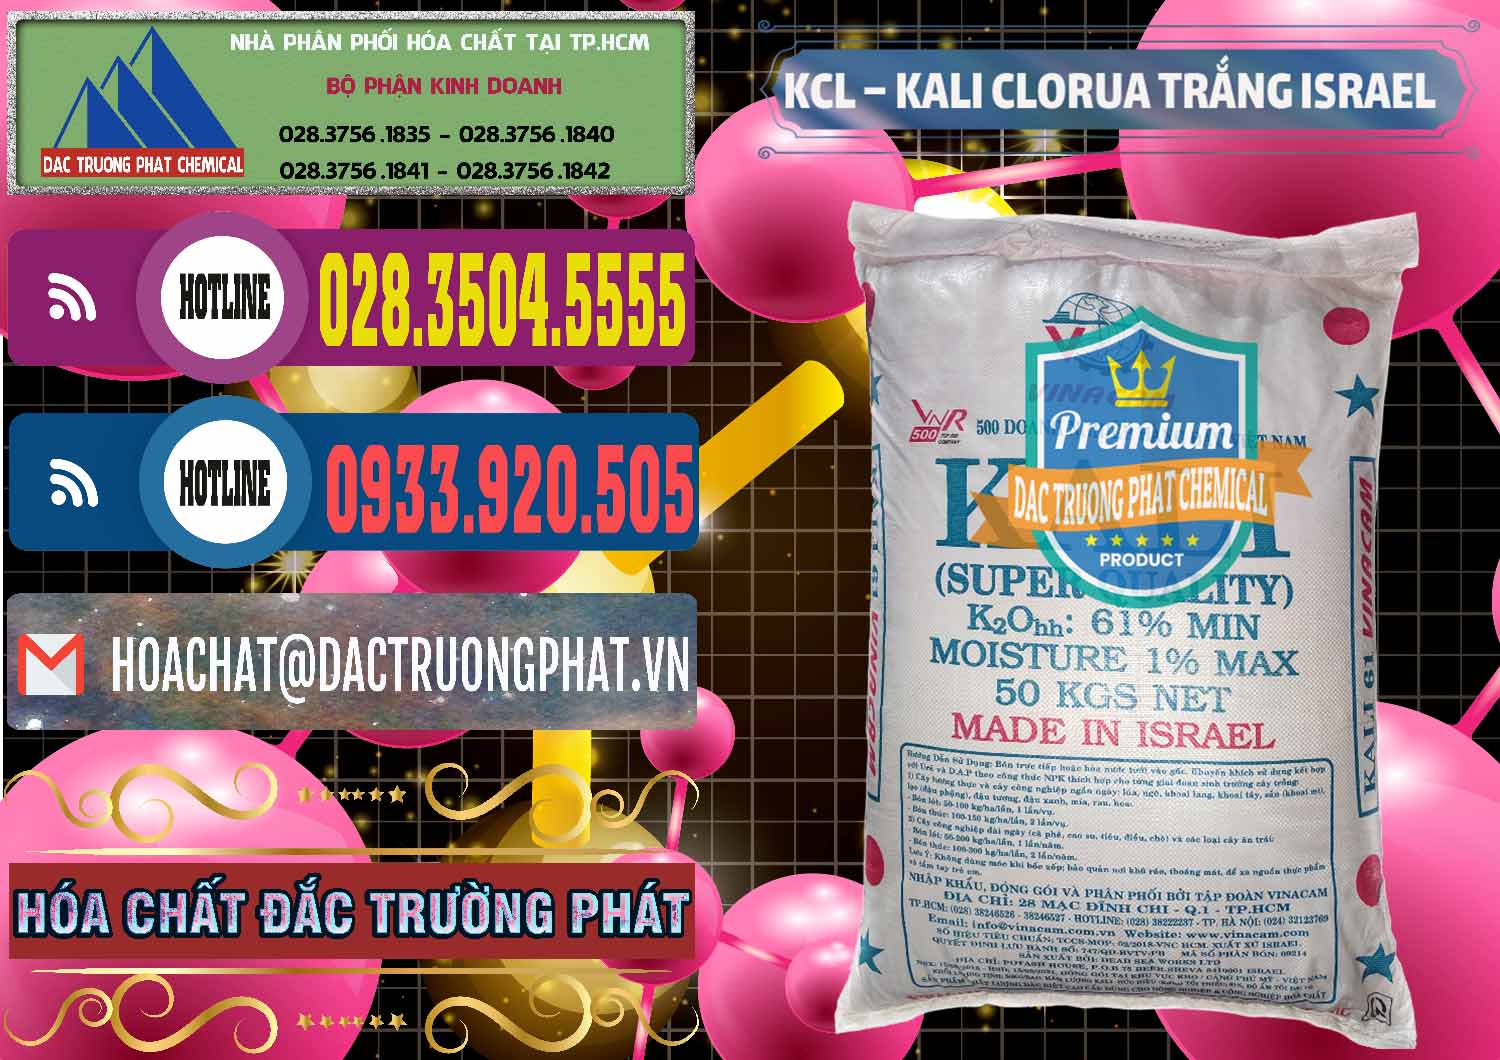 Đơn vị bán và cung ứng KCL – Kali Clorua Trắng Israel - 0087 - Cty chuyên kinh doanh ( phân phối ) hóa chất tại TP.HCM - muabanhoachat.com.vn